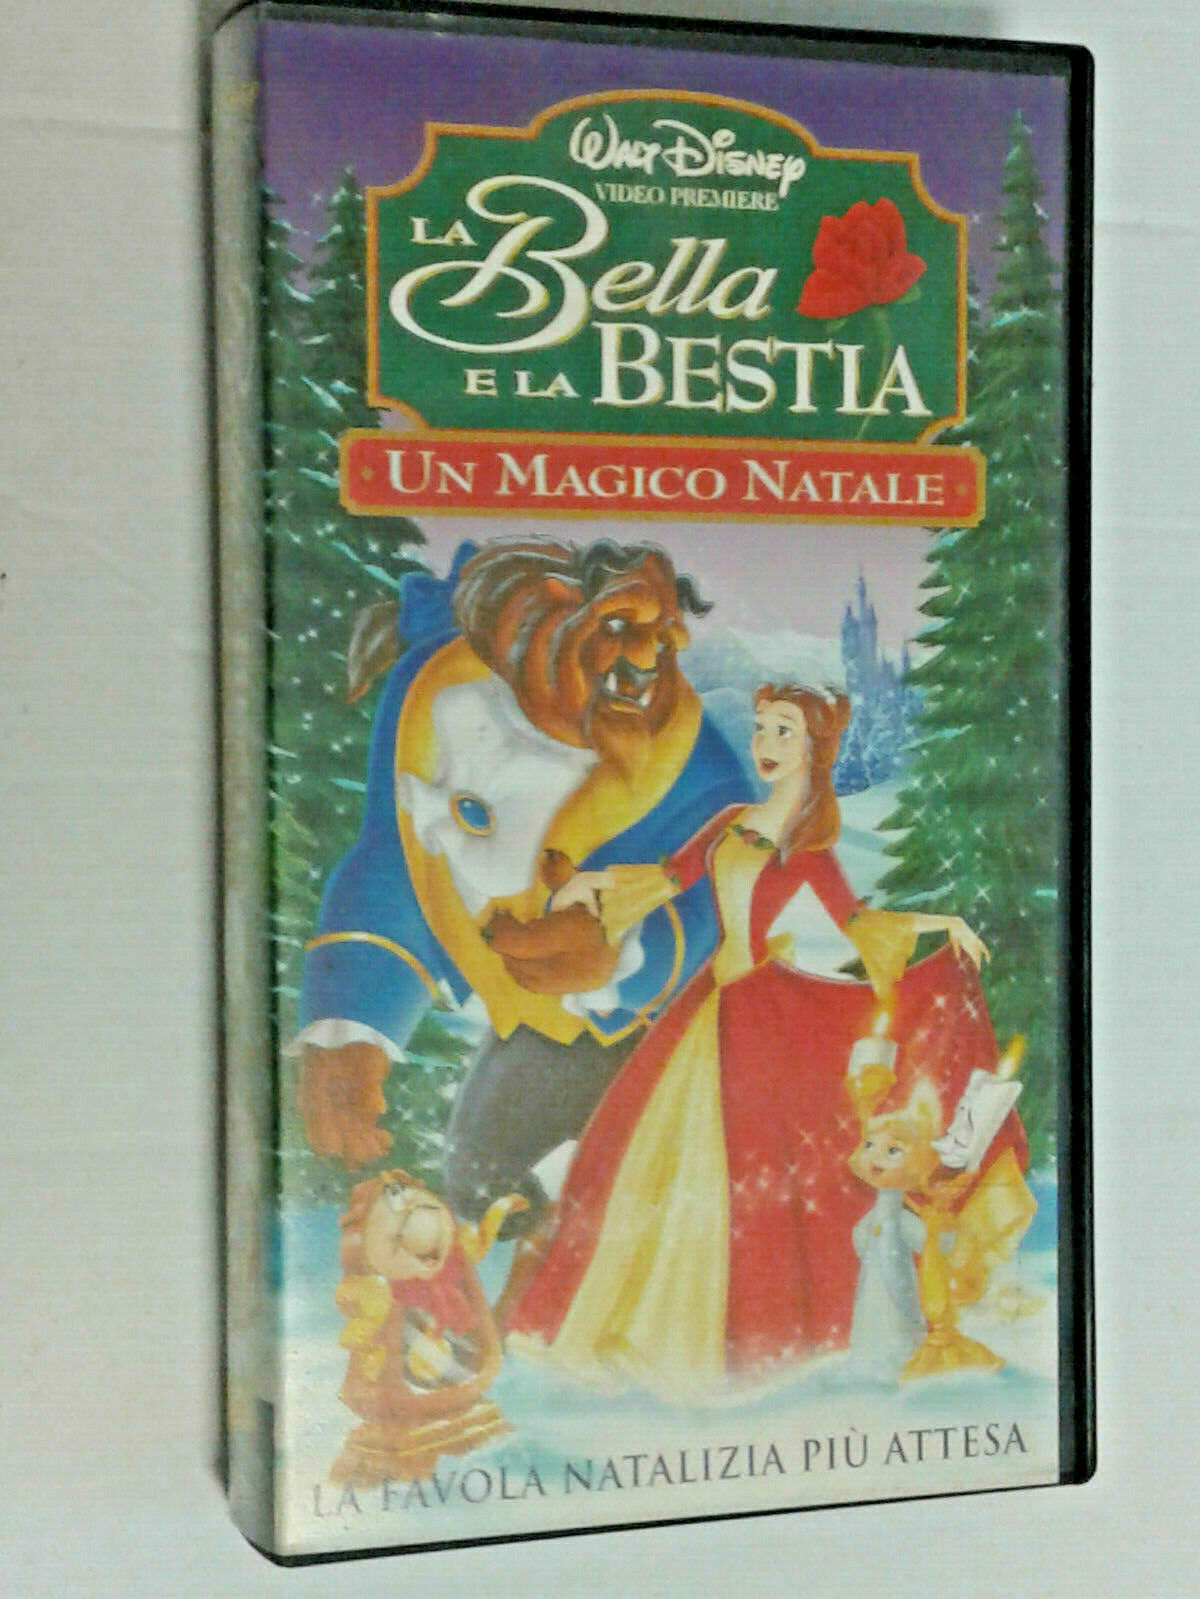 WALT DISNEY- (m)- LA BELLA E LA BESTIA- VHS ANIMAZIONE ORIGINALE